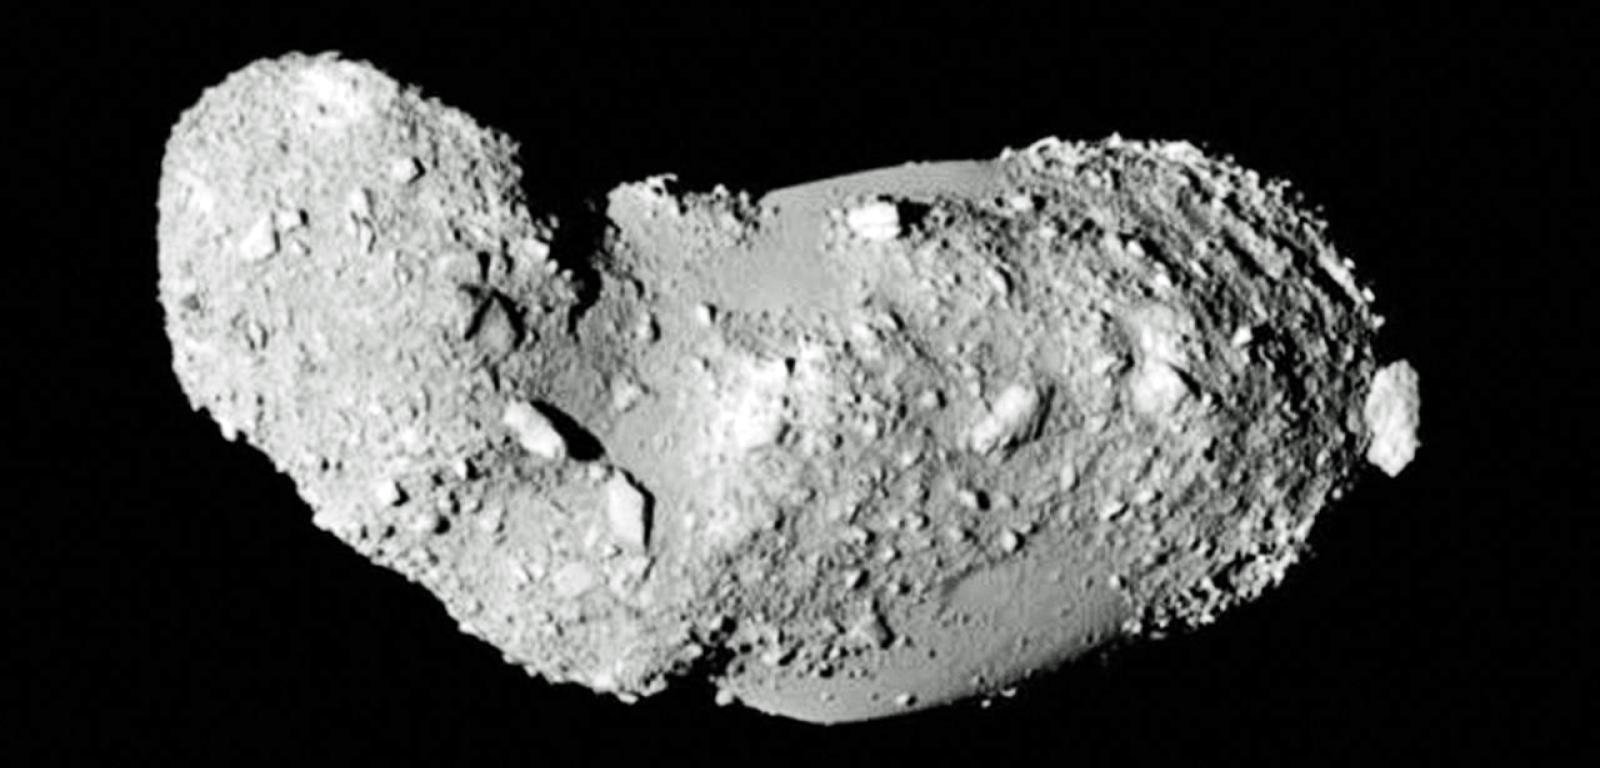 Asteroida Itokawa.

Pulsar - Twoje źródło wiedzy naukowej.